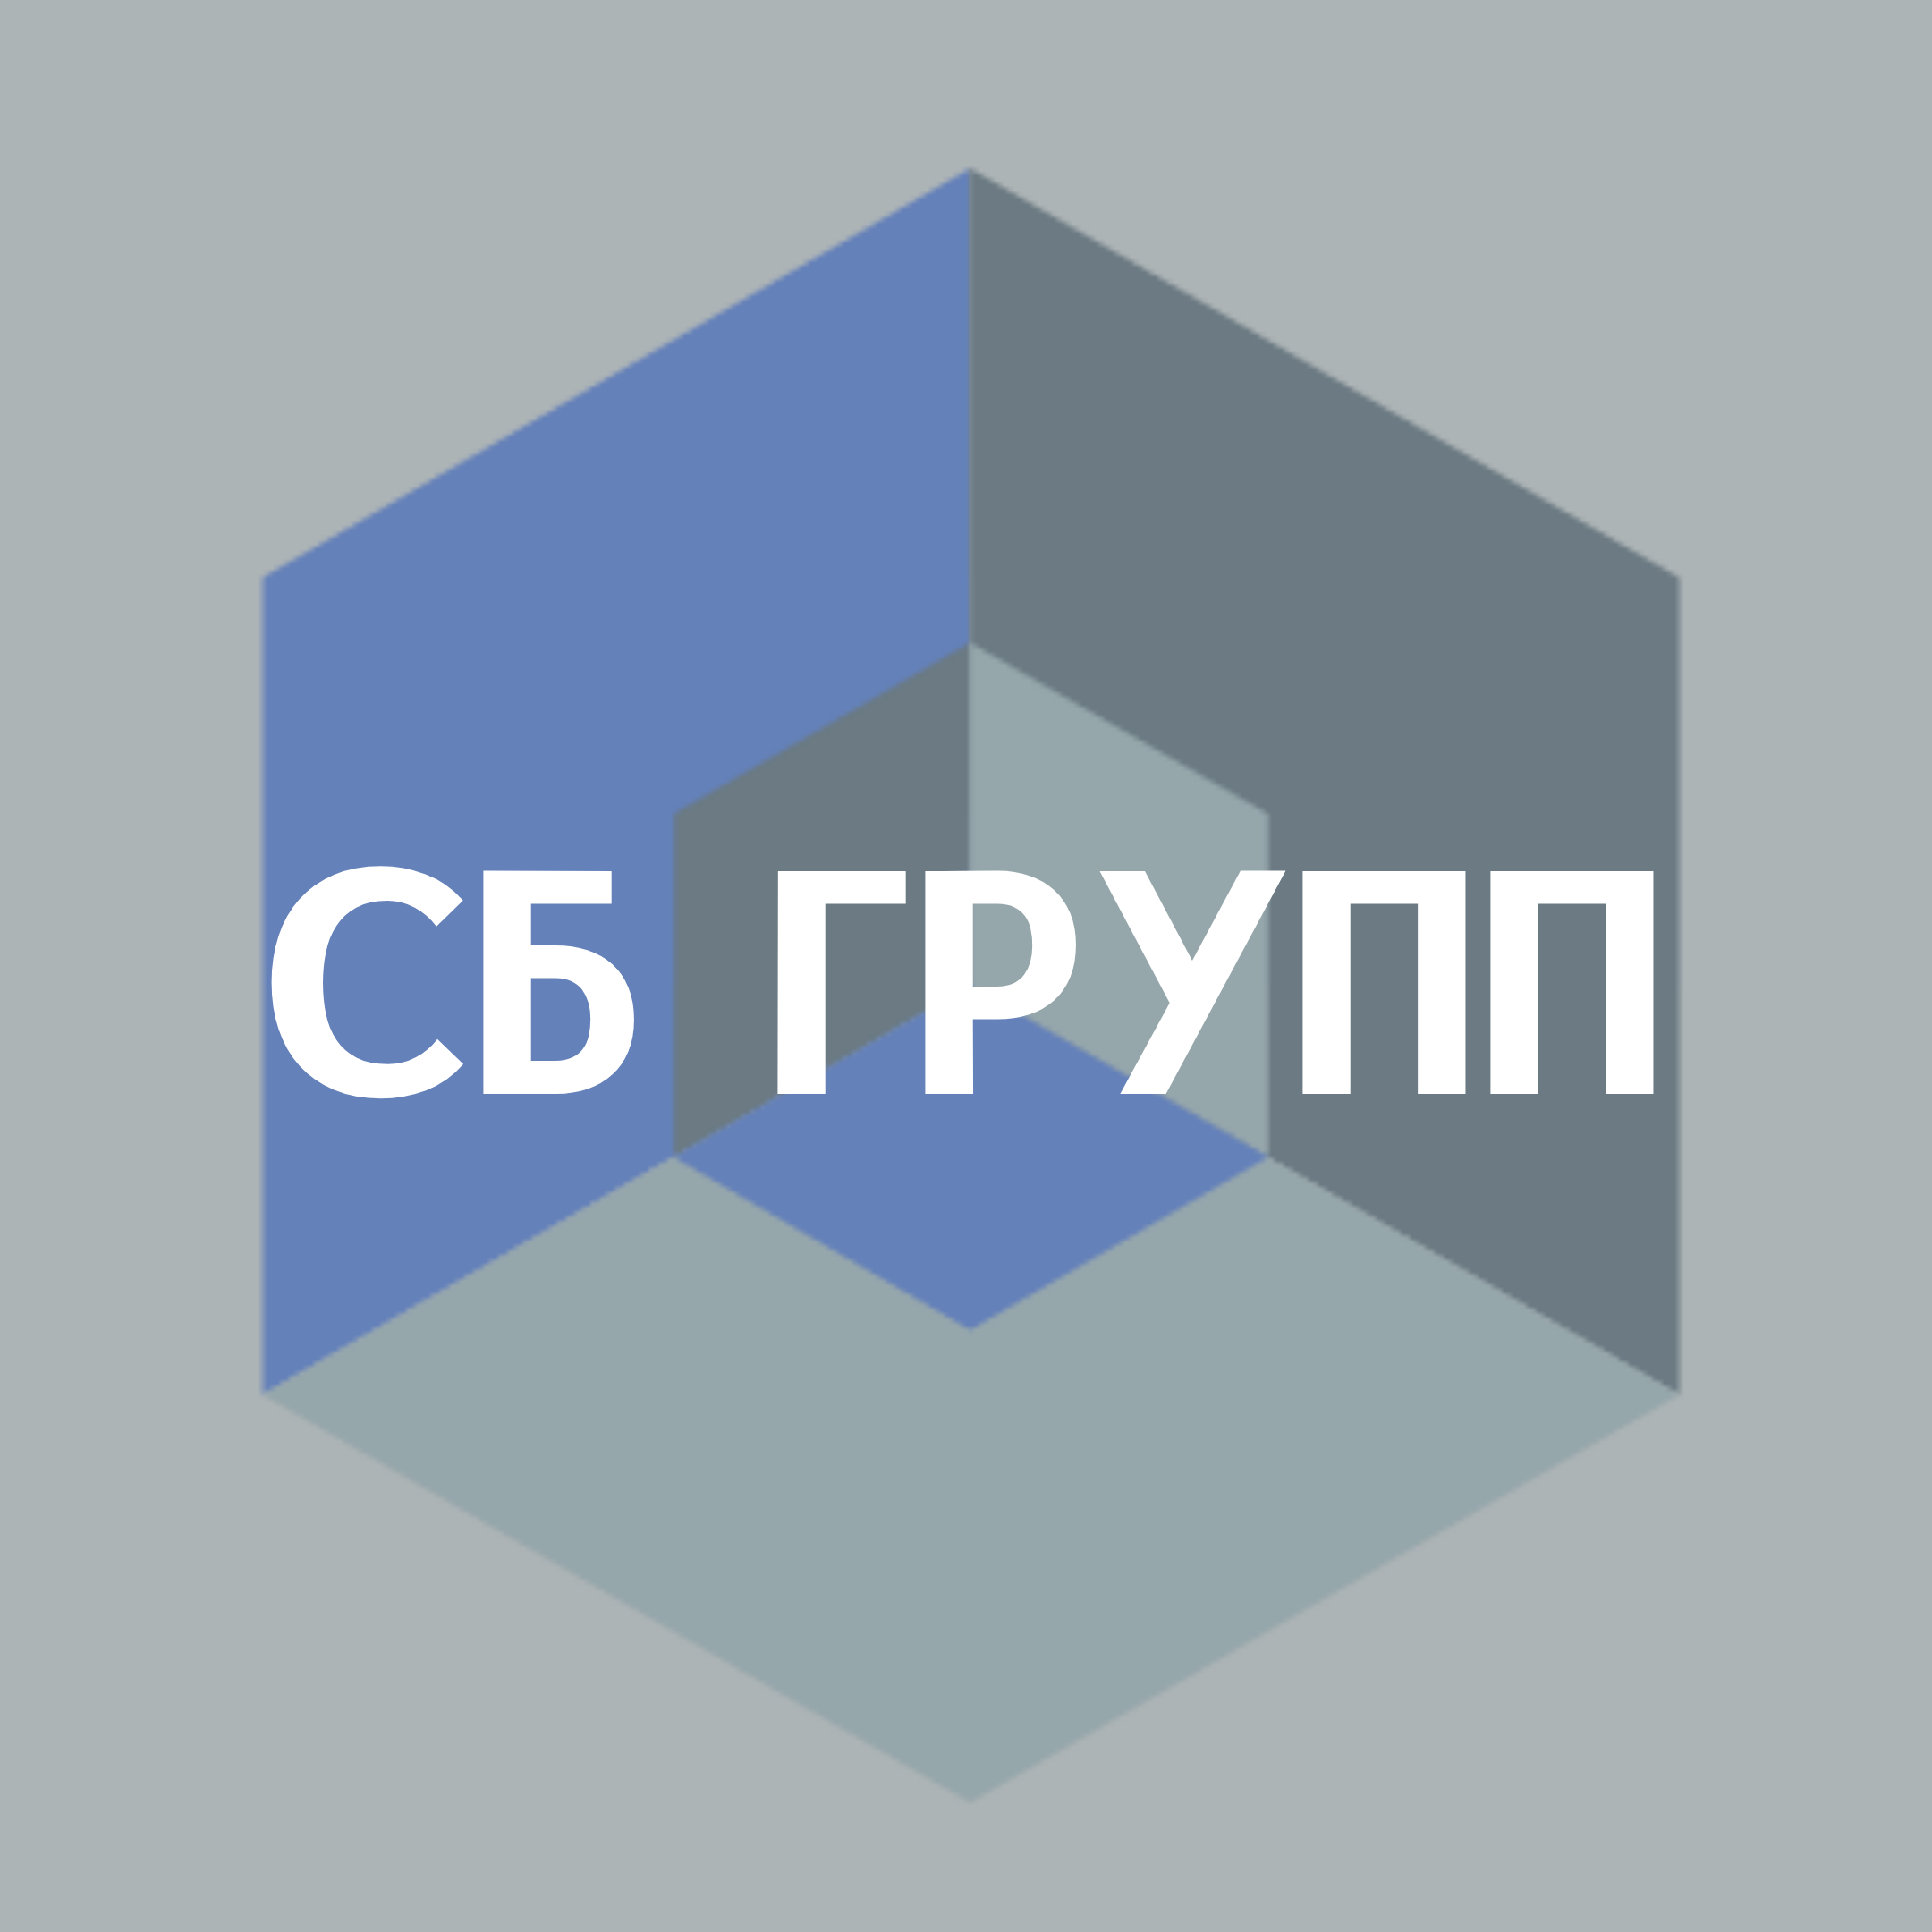 Логотип компании СБ ГРУПП